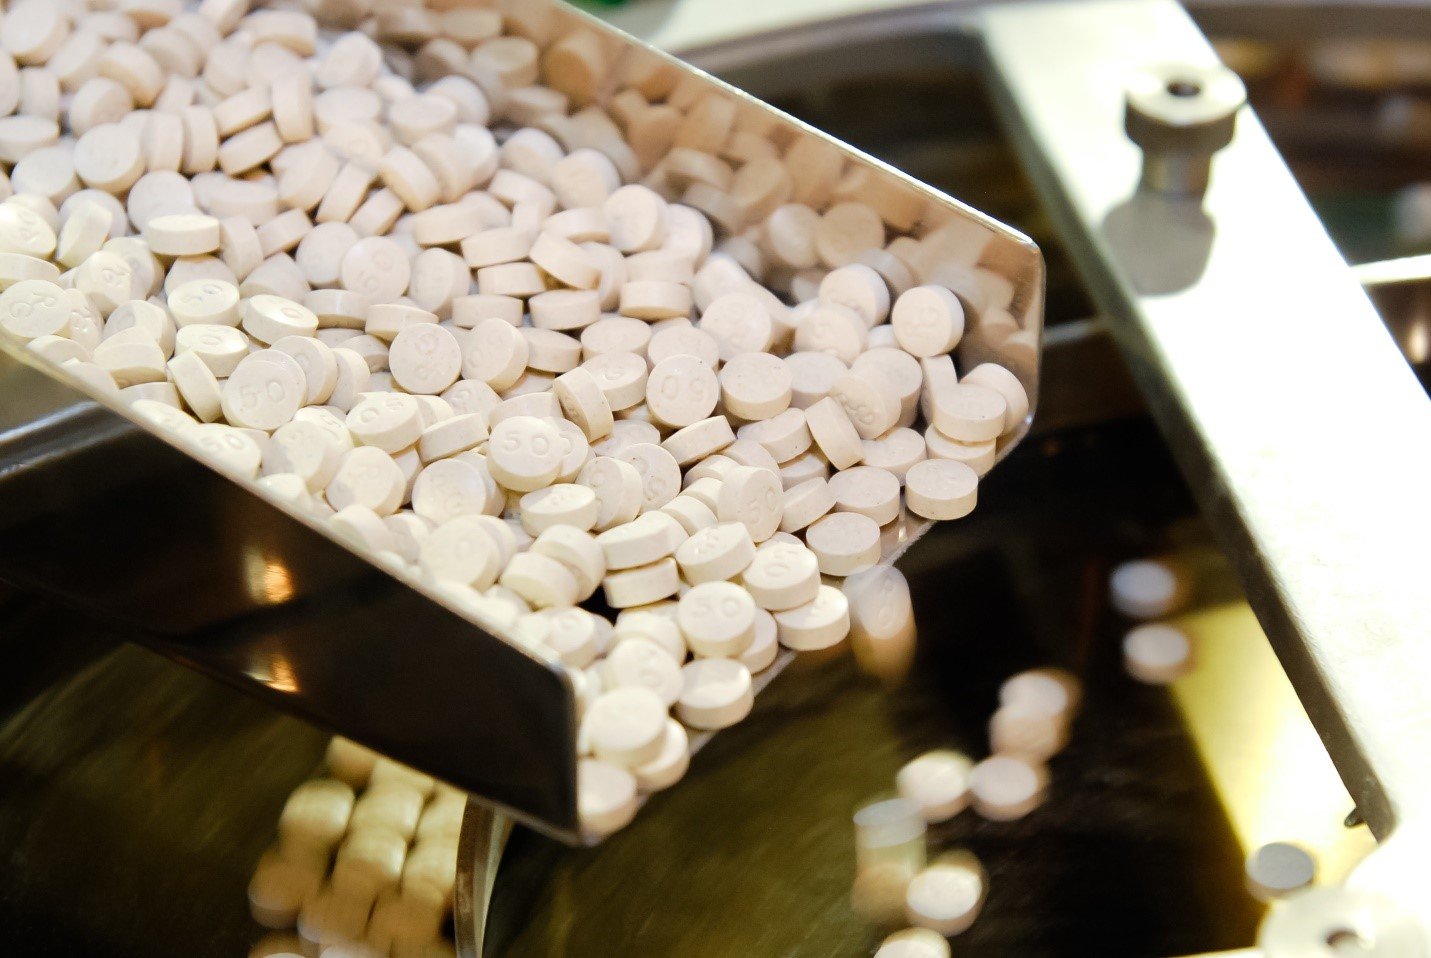 Prescription Opioids Are A Clear Path To Addiction